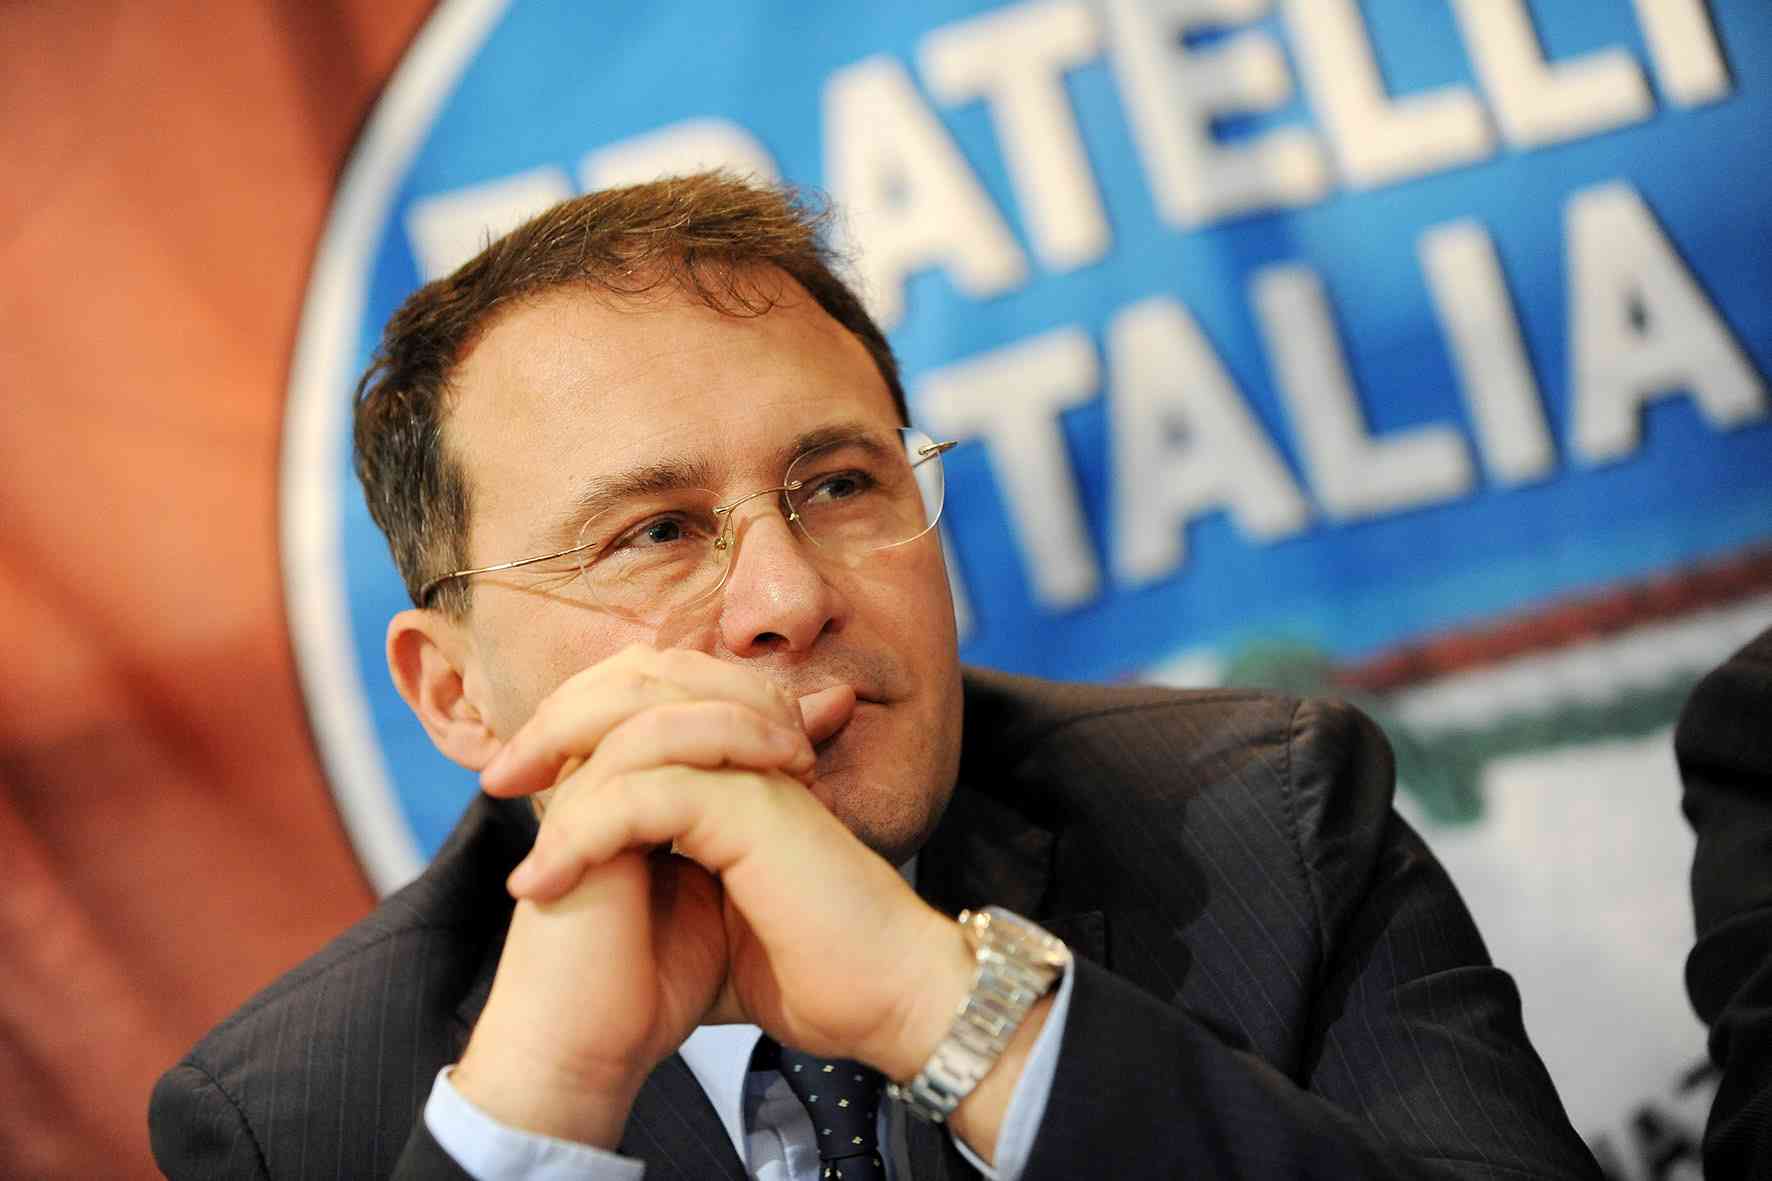 Campania: Sanità, on. Cirielli “Per nascondere catastrofe sanitaria Presidente De Luca, attacca Meloni”